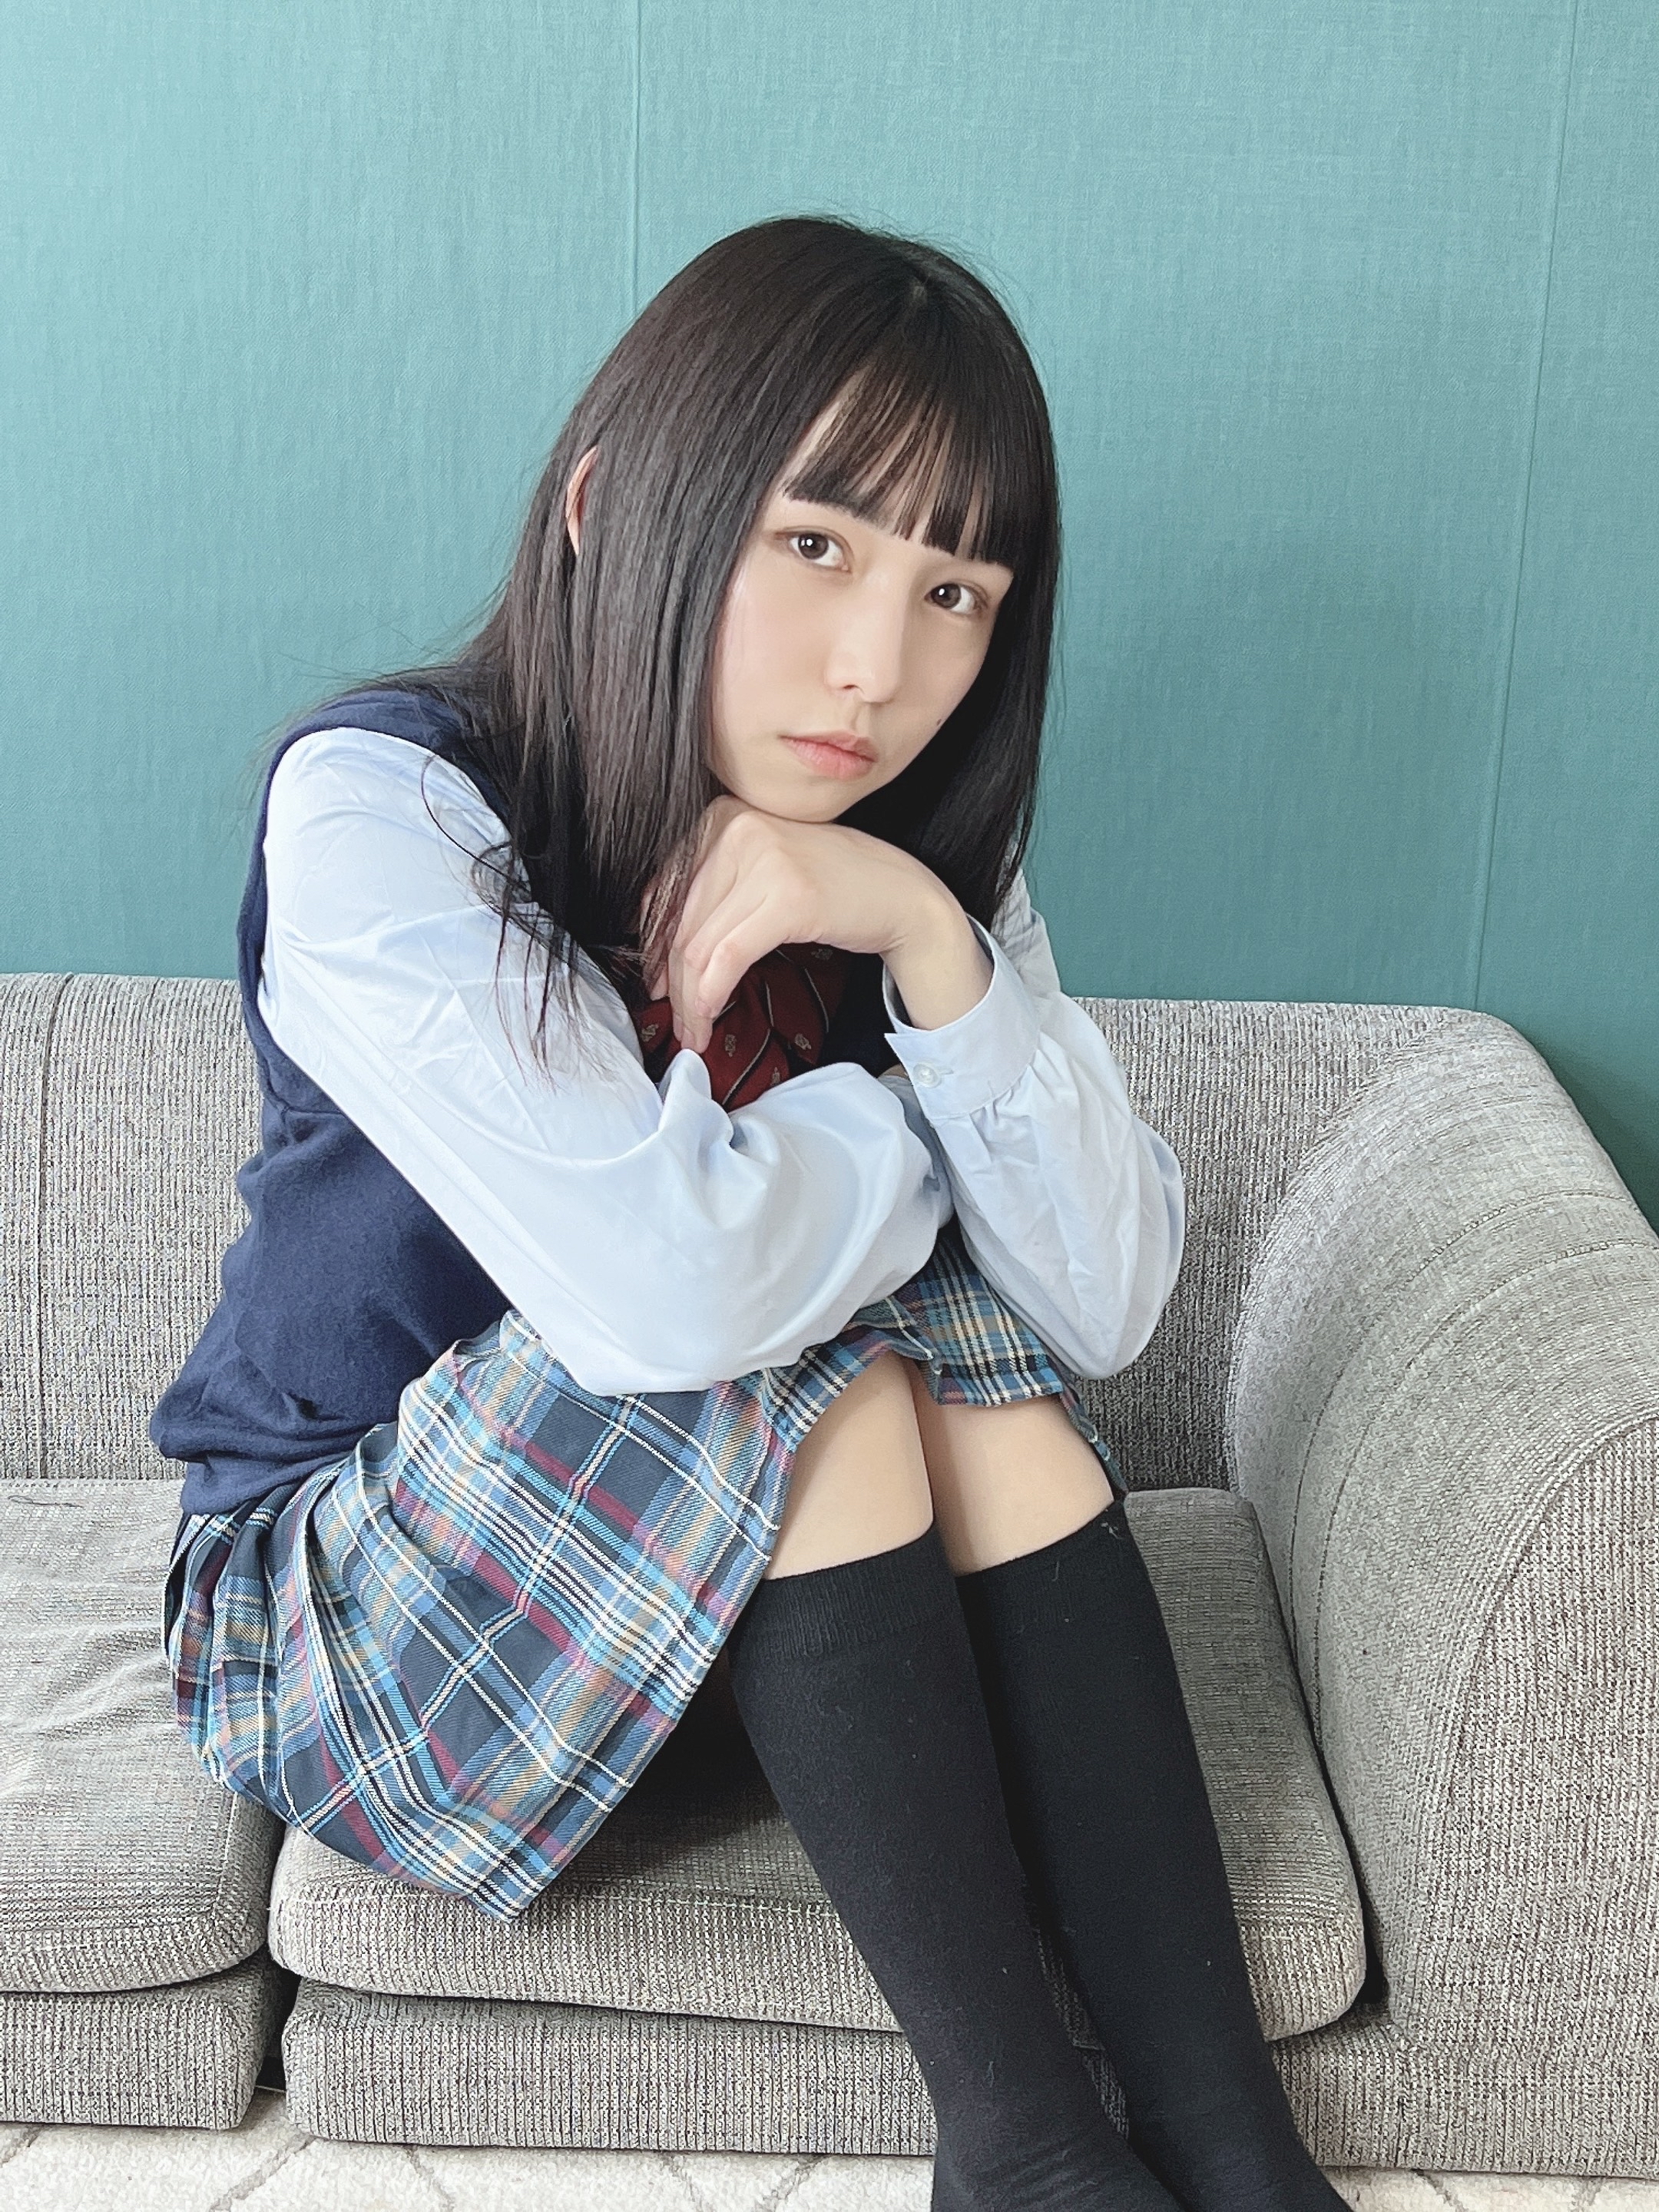 与早川真由同名17岁女高中生晒图走红,网友:她的制服装很正宗